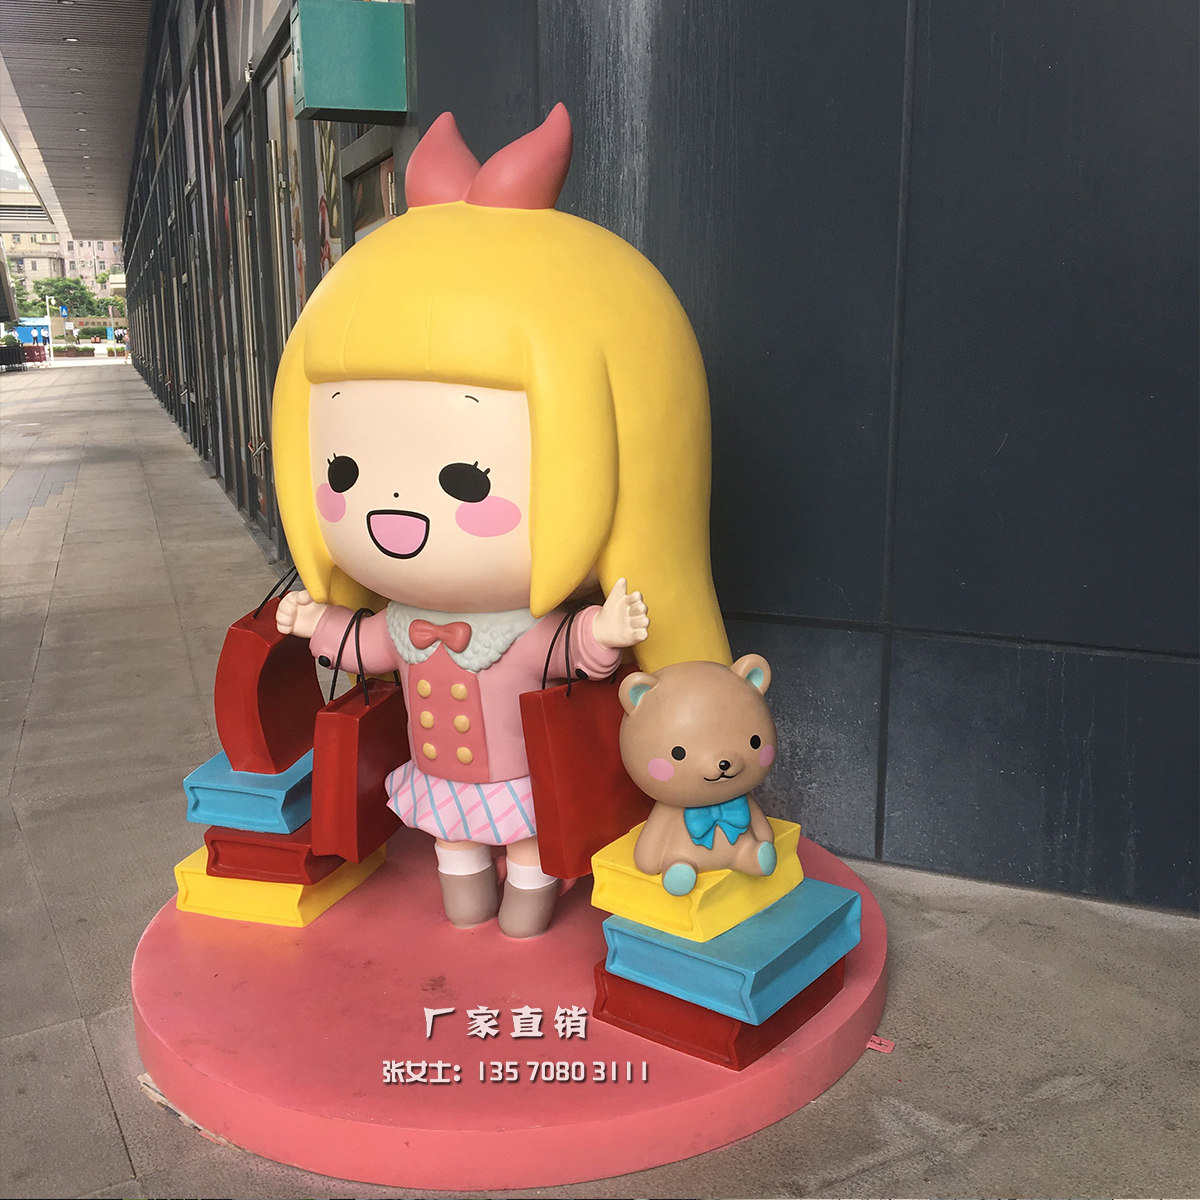 惠州市大型商场美陈主题街区卡通女孩自拍厂家